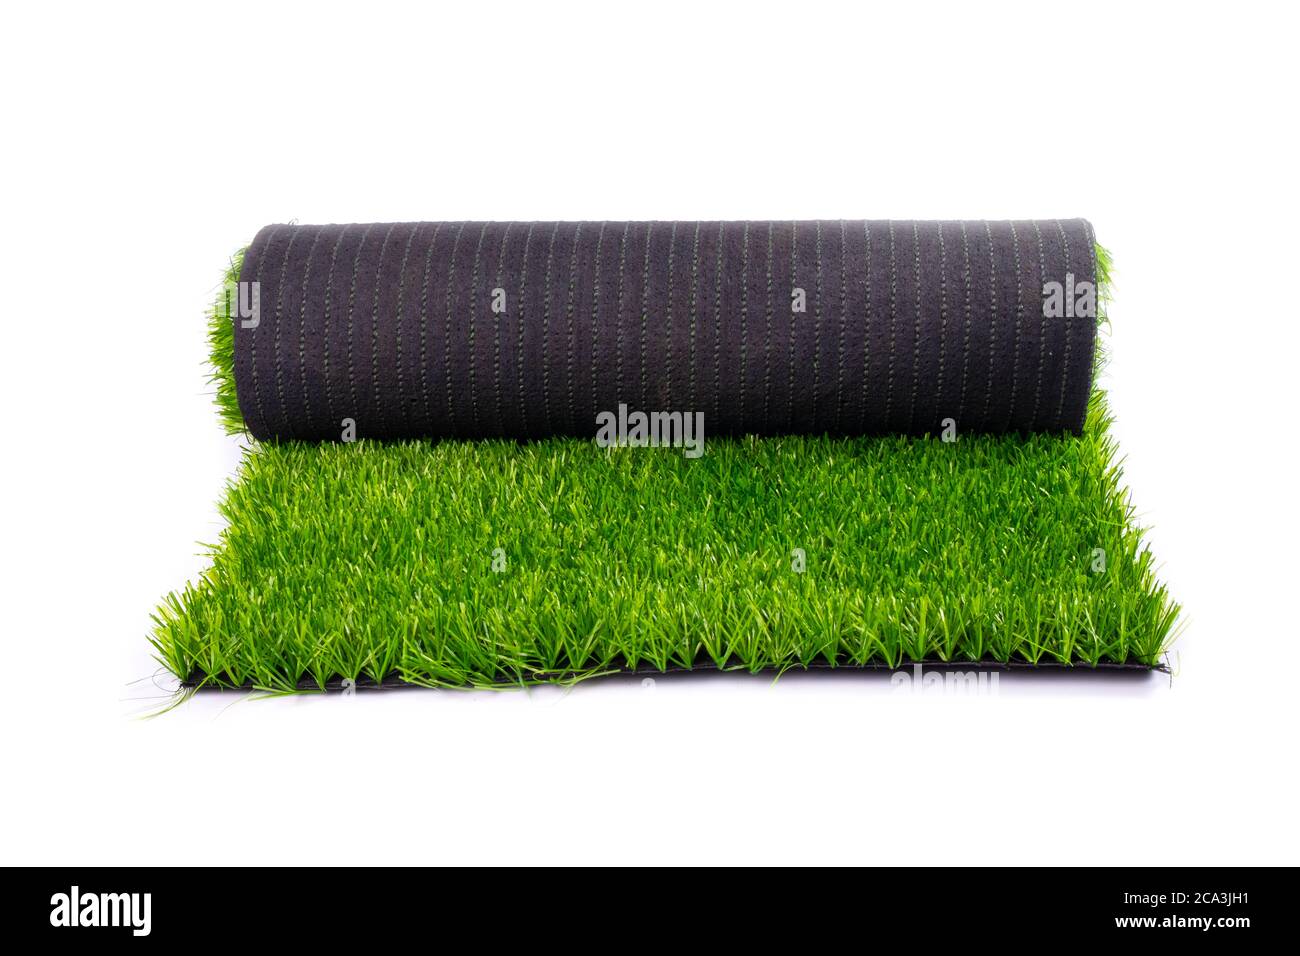 Teppich, Kunstrasen, Rollen mit grünem Rasen isoliert auf weißem  Hintergrund Stockfotografie - Alamy